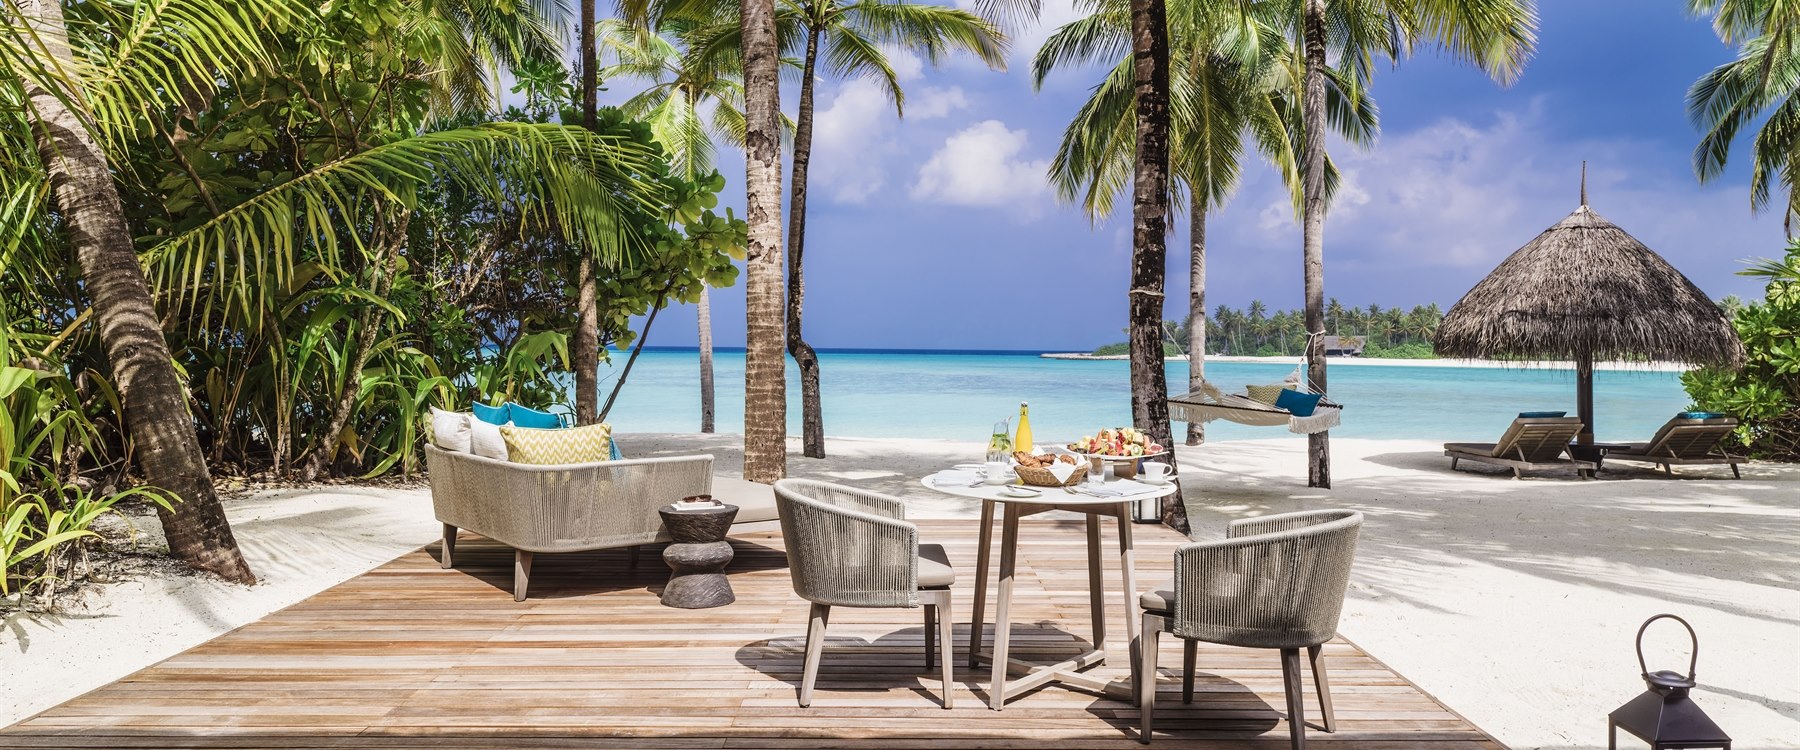 Beach villa at One&Only Reethi Rah, Maldives